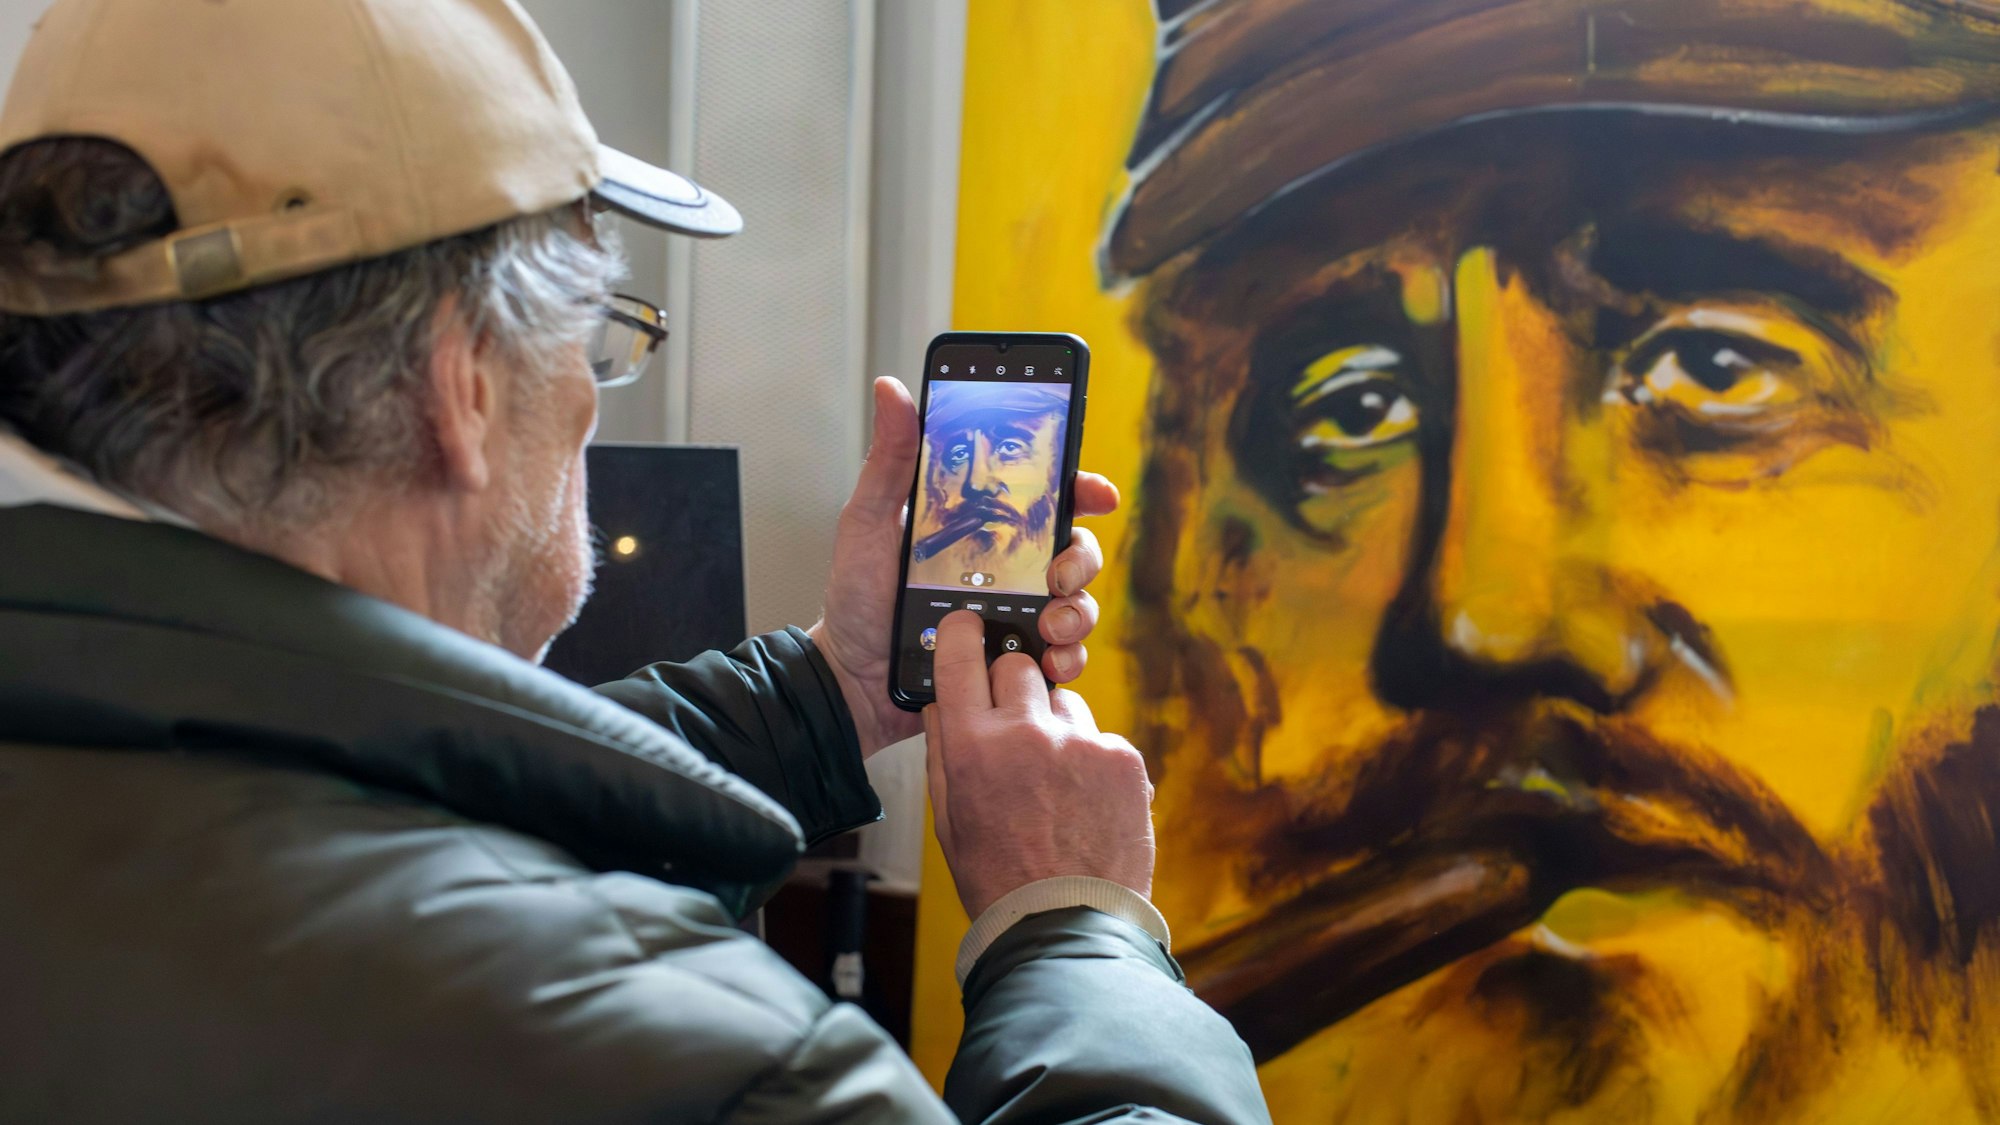 Ein Mann fotografiert mit dem Smartphone ein gemaltes Porträt von Fidel Castro.